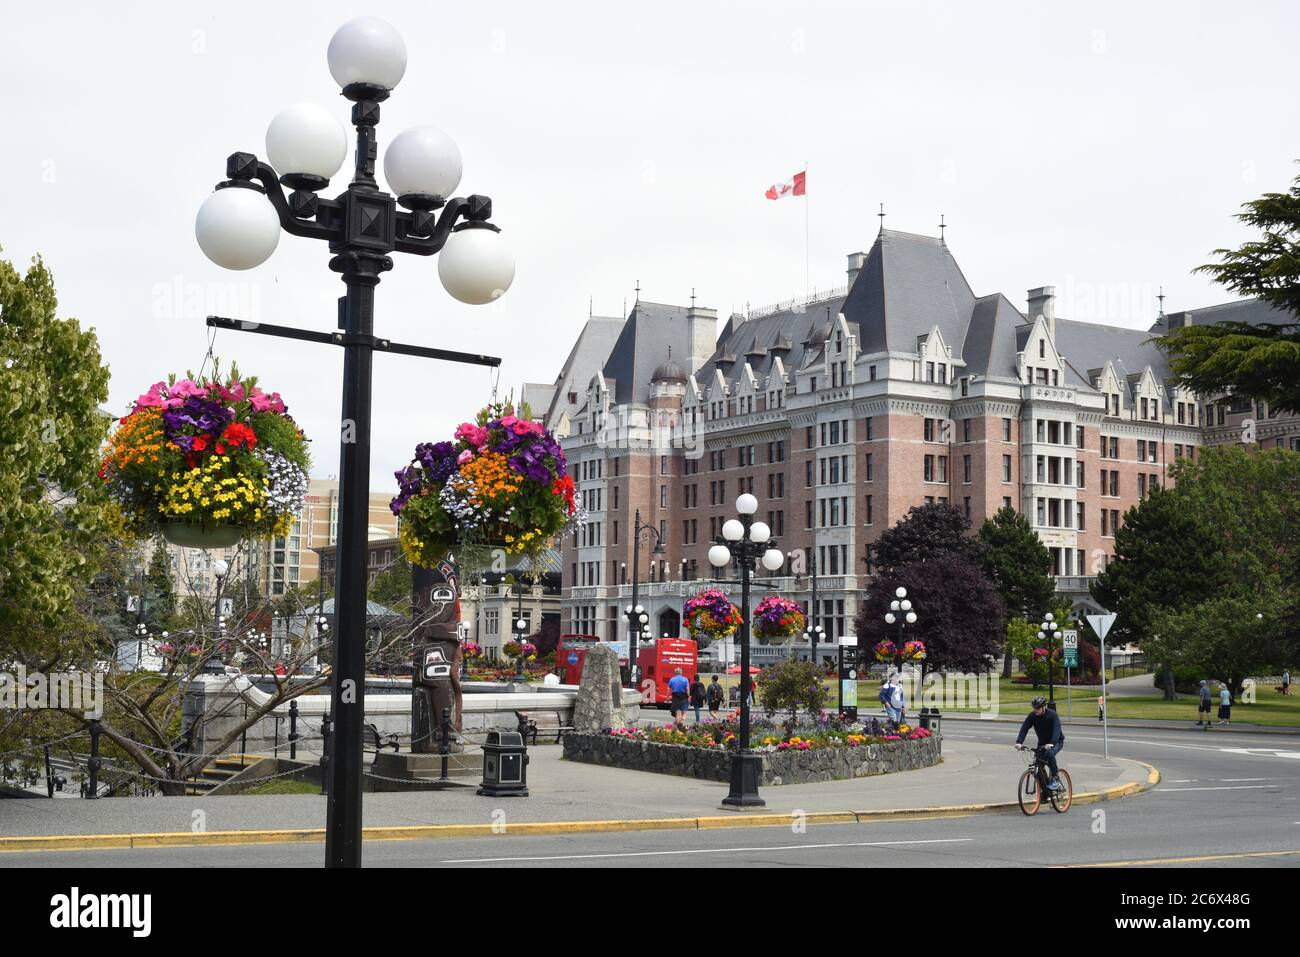 Vue sur les paniers de fleurs suspendus et l'hôtel historique Fairmont Empress au centre-ville de Victoria, Colombie-Britannique, Canada, sur l'île de Vancouver. Banque D'Images